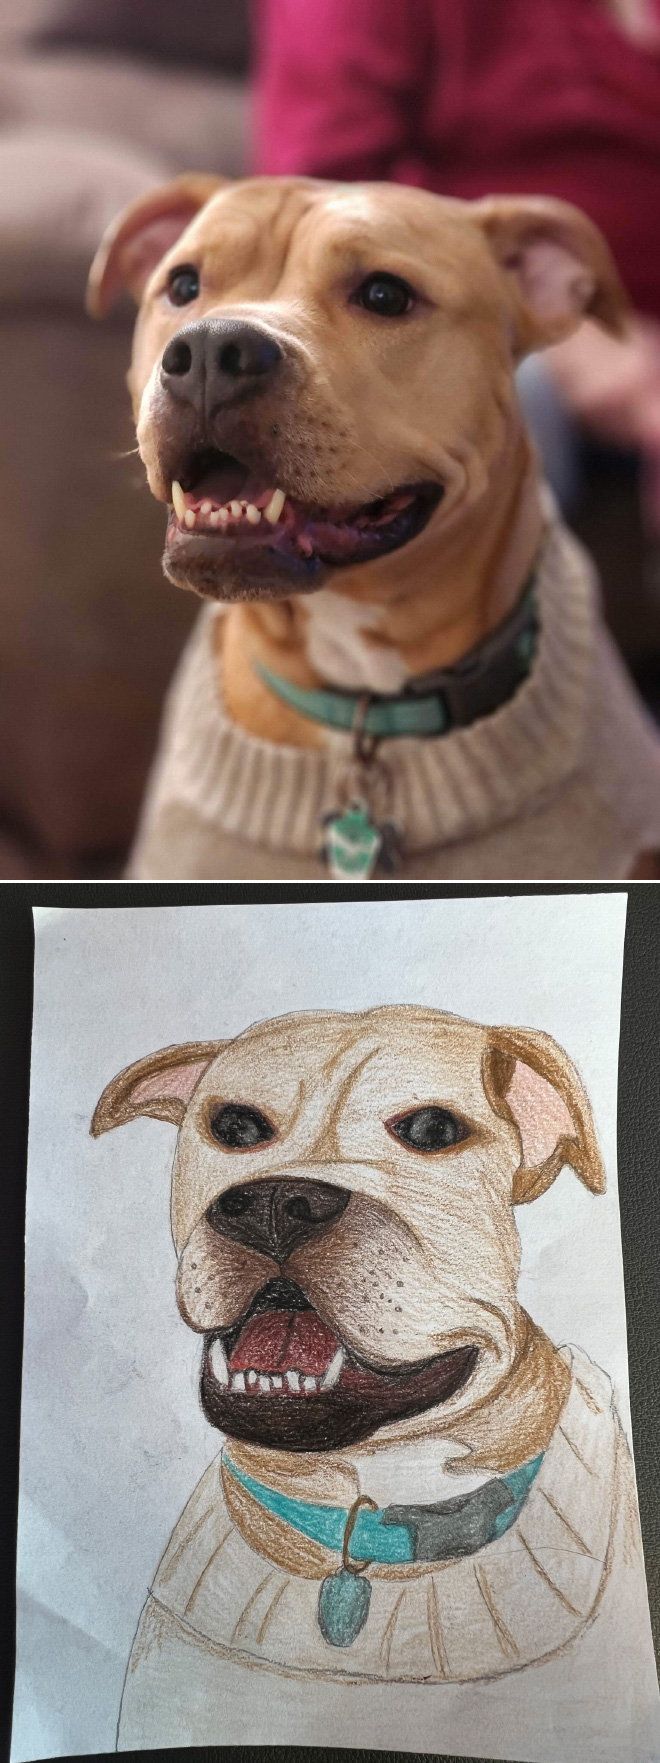 Poorly drawn dog.